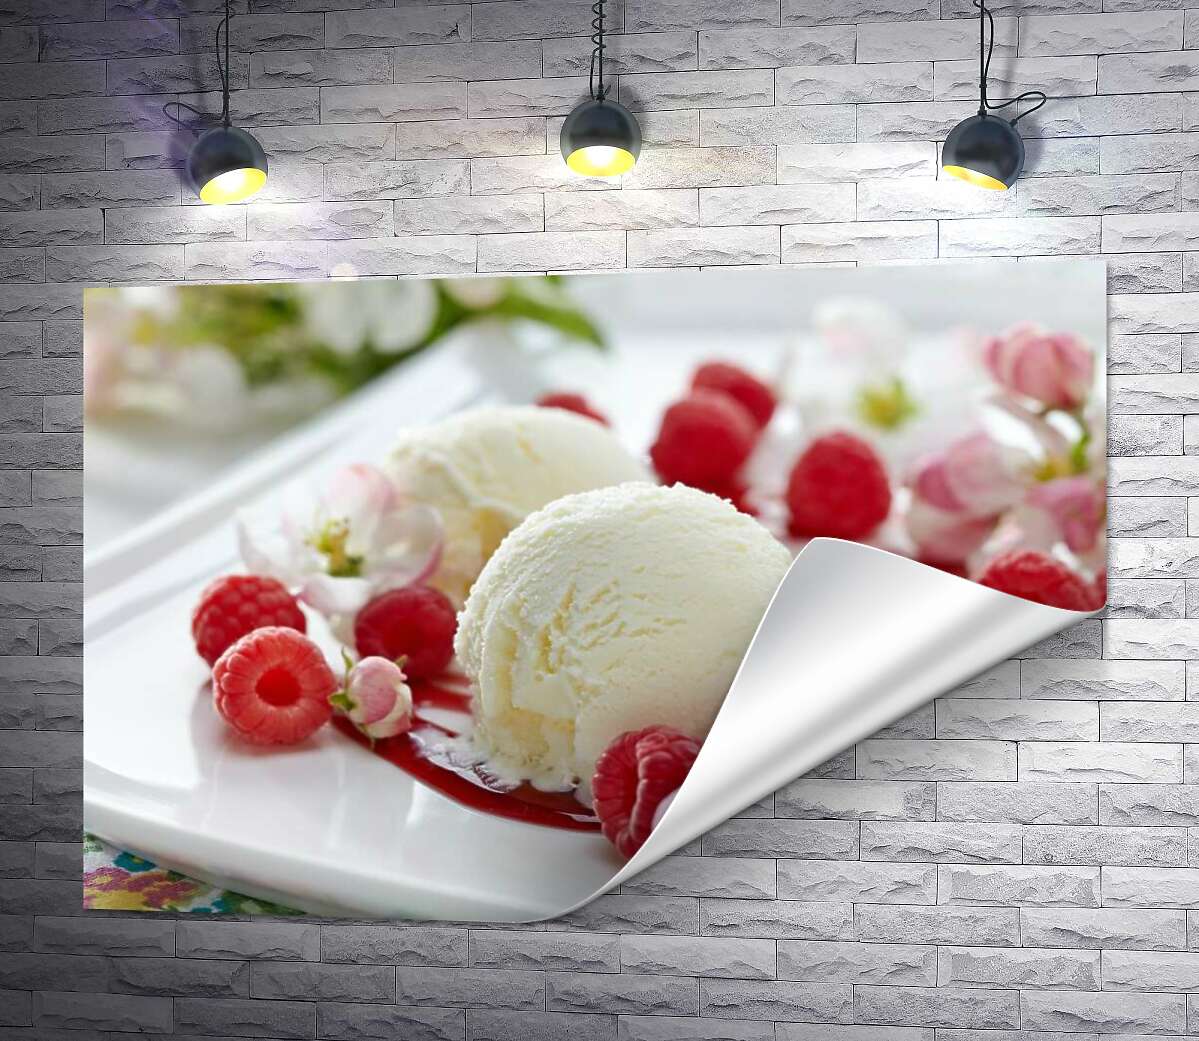 друк Кульки ванільного морозива на тарілці з ягодами малини та ніжними квітами